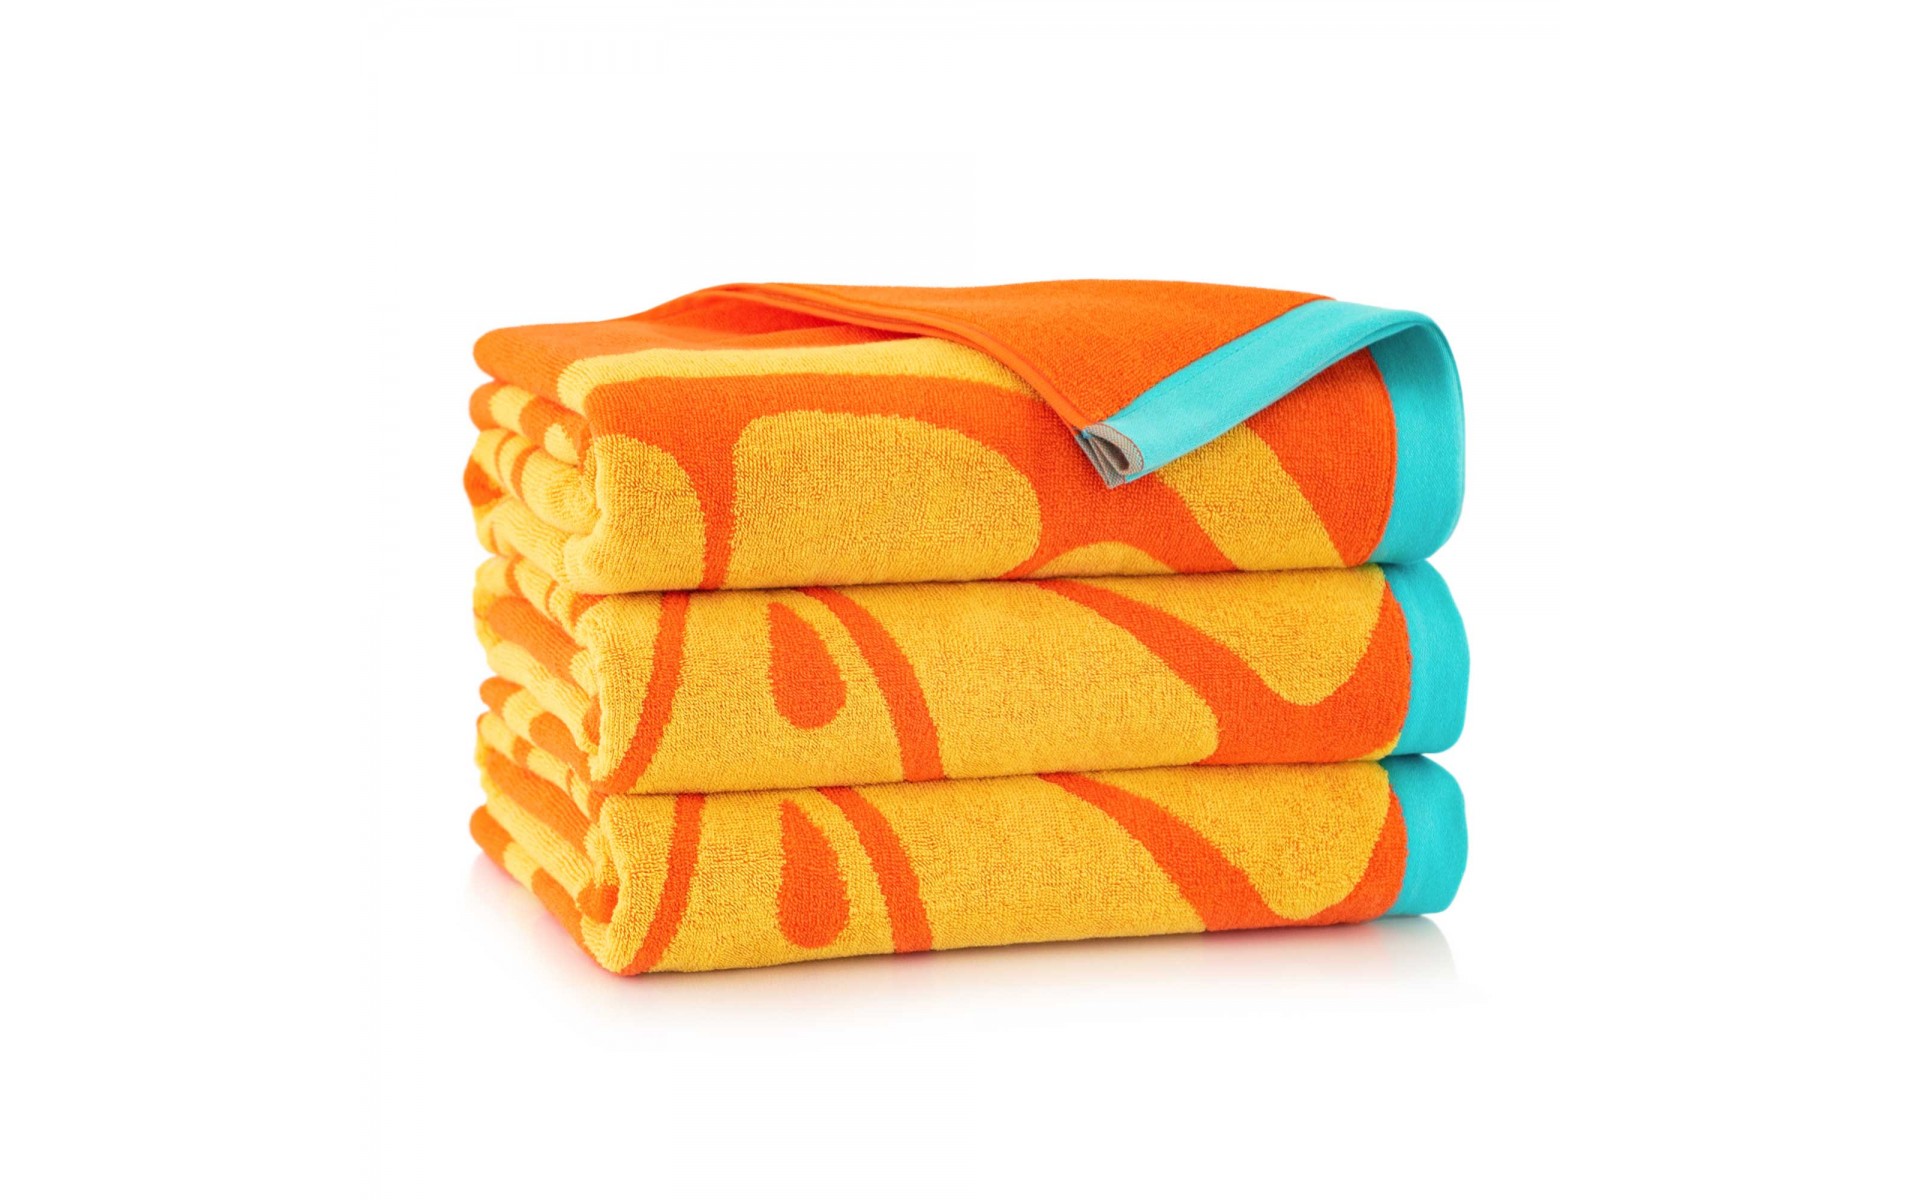 ręcznik ORANGE oranż - 9916